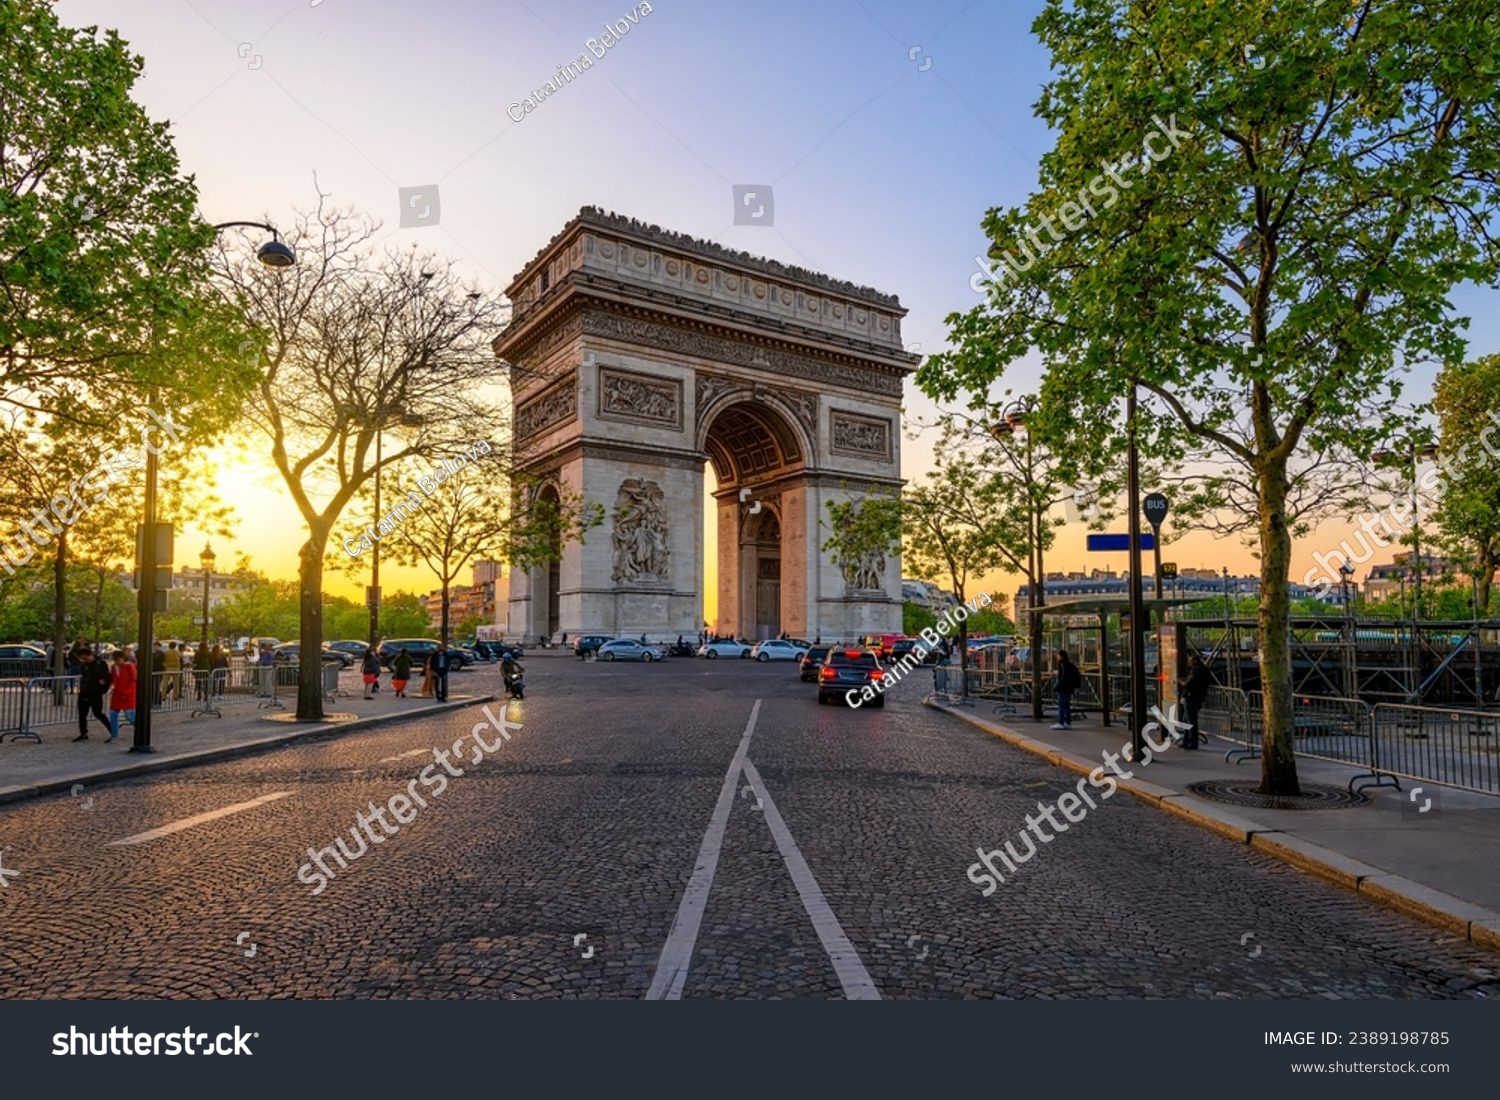 Paris Arc de Triomphe (Triumphal Arch) in Chaps Elysees at sunset, Paris, France. Cityscape of Paris. Architecture and landmarks of Paris #2389198785